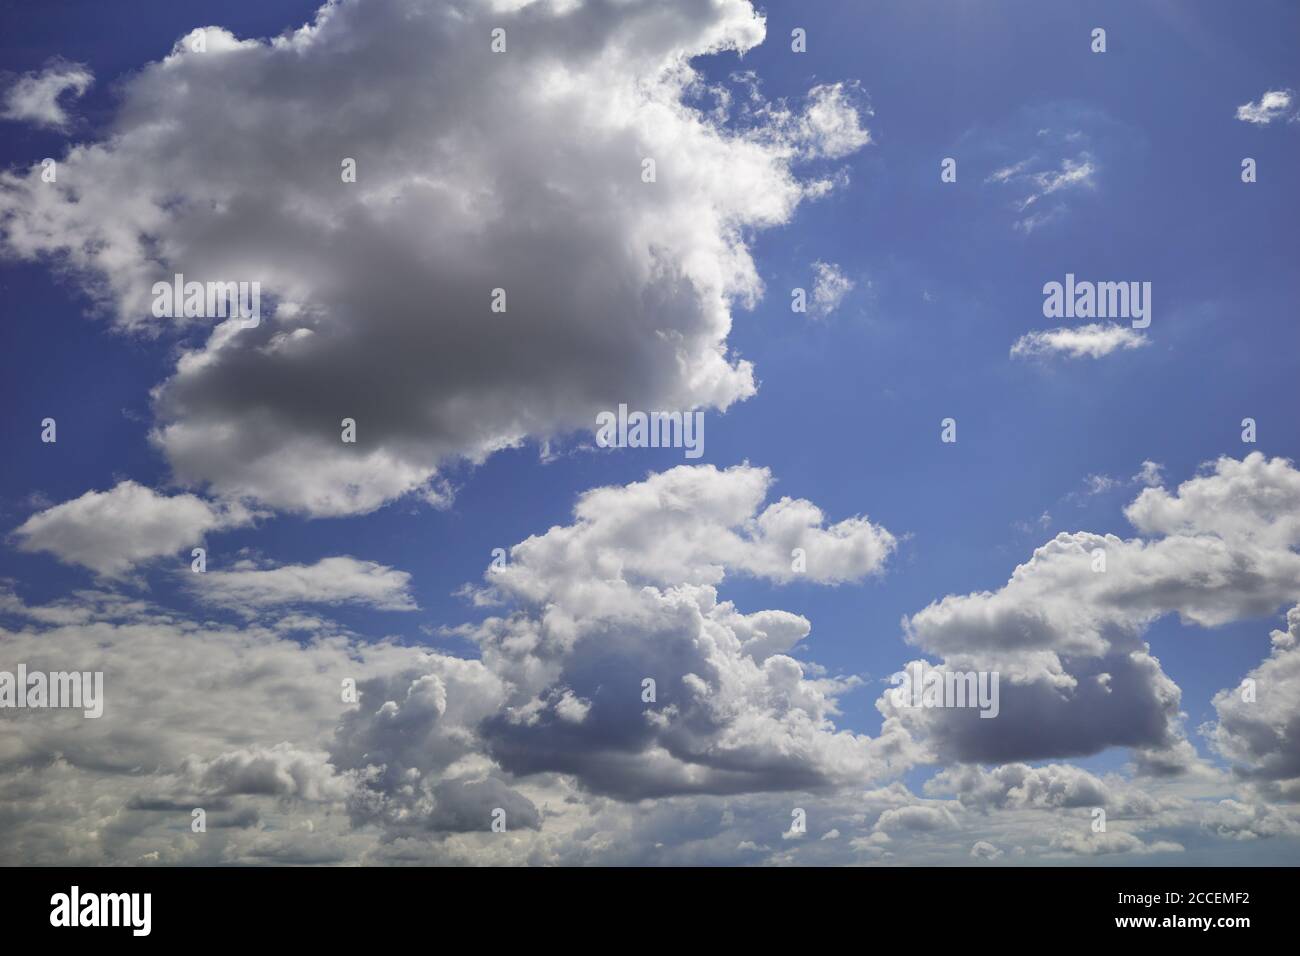 Nuages bulbeux blancs et gris foncé dans le ciel indigo. Boursouflé et affichant des nuages blancs et gris dans le ciel. Contexte de la prévision et de la météorologie Banque D'Images